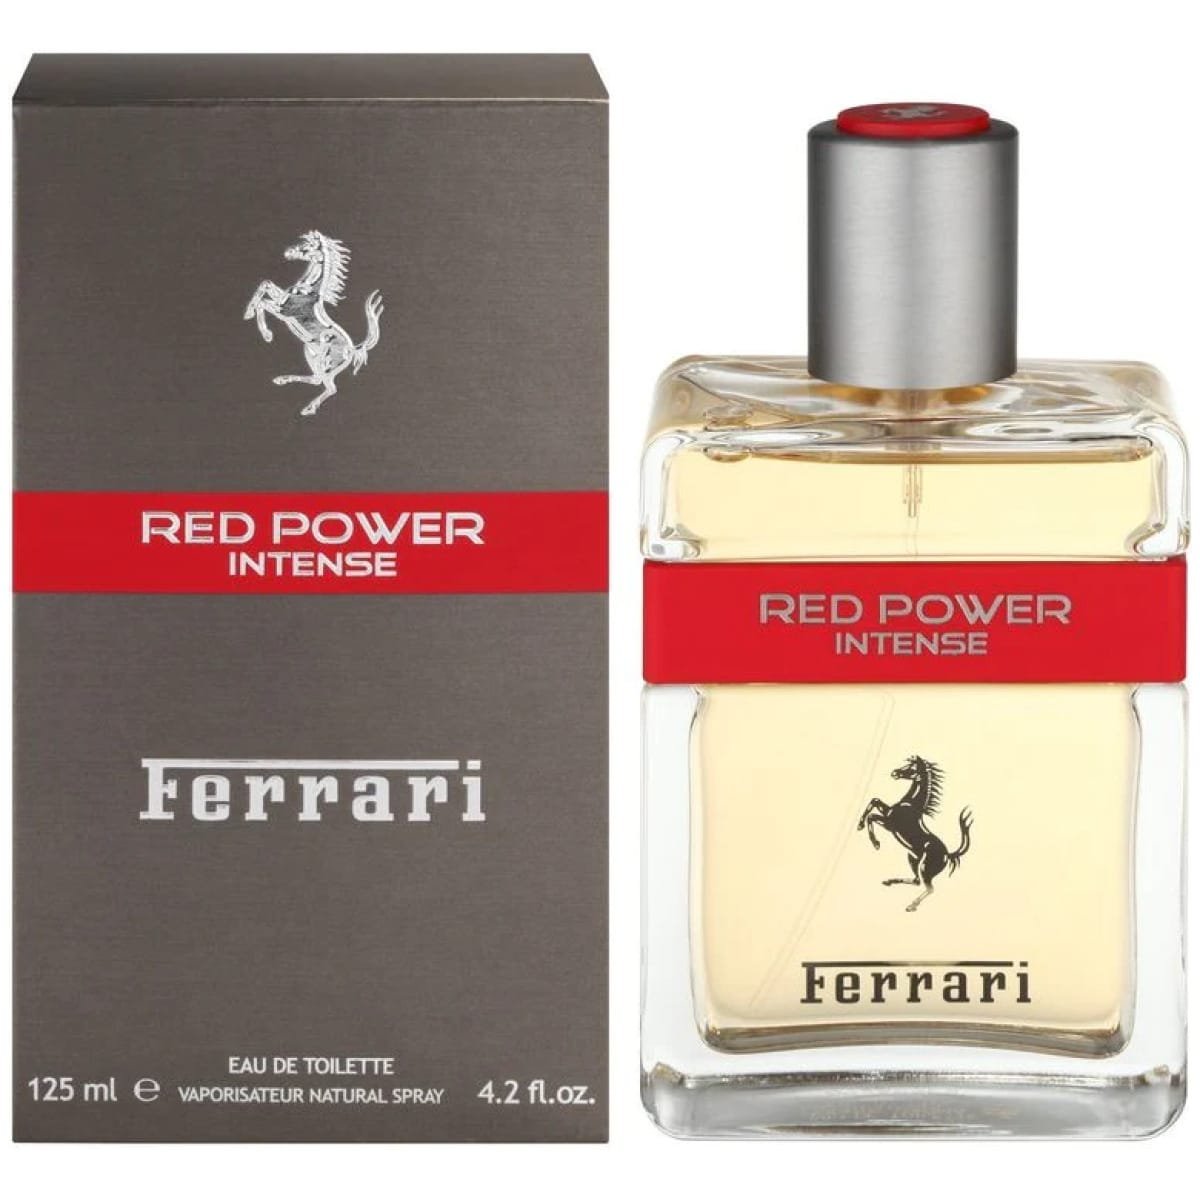 Ferrari Red Power Intense EDT Perfume For Men 125 ml